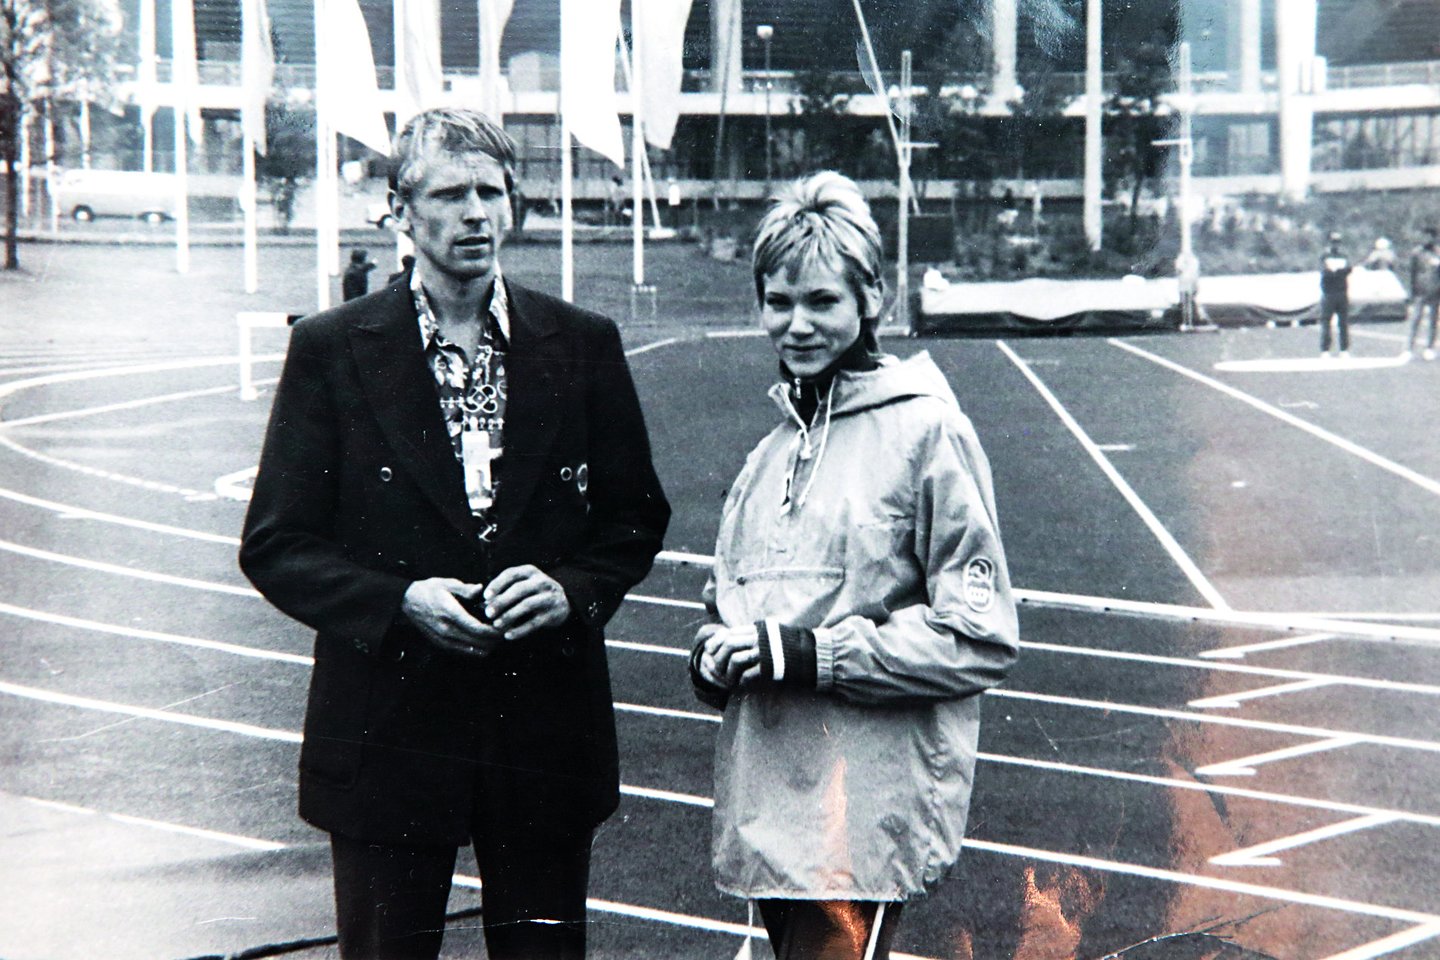  Miuncheno olimpiniame stadione 1972 metais startavęs R.Bitė užėmė septintąją vietą, o vidutinio nuotolio bėgikė Nijolė Sabaitė-Razienė iškovojo sidabro medalį.<br>Nuotr. iš asmeninio albumo